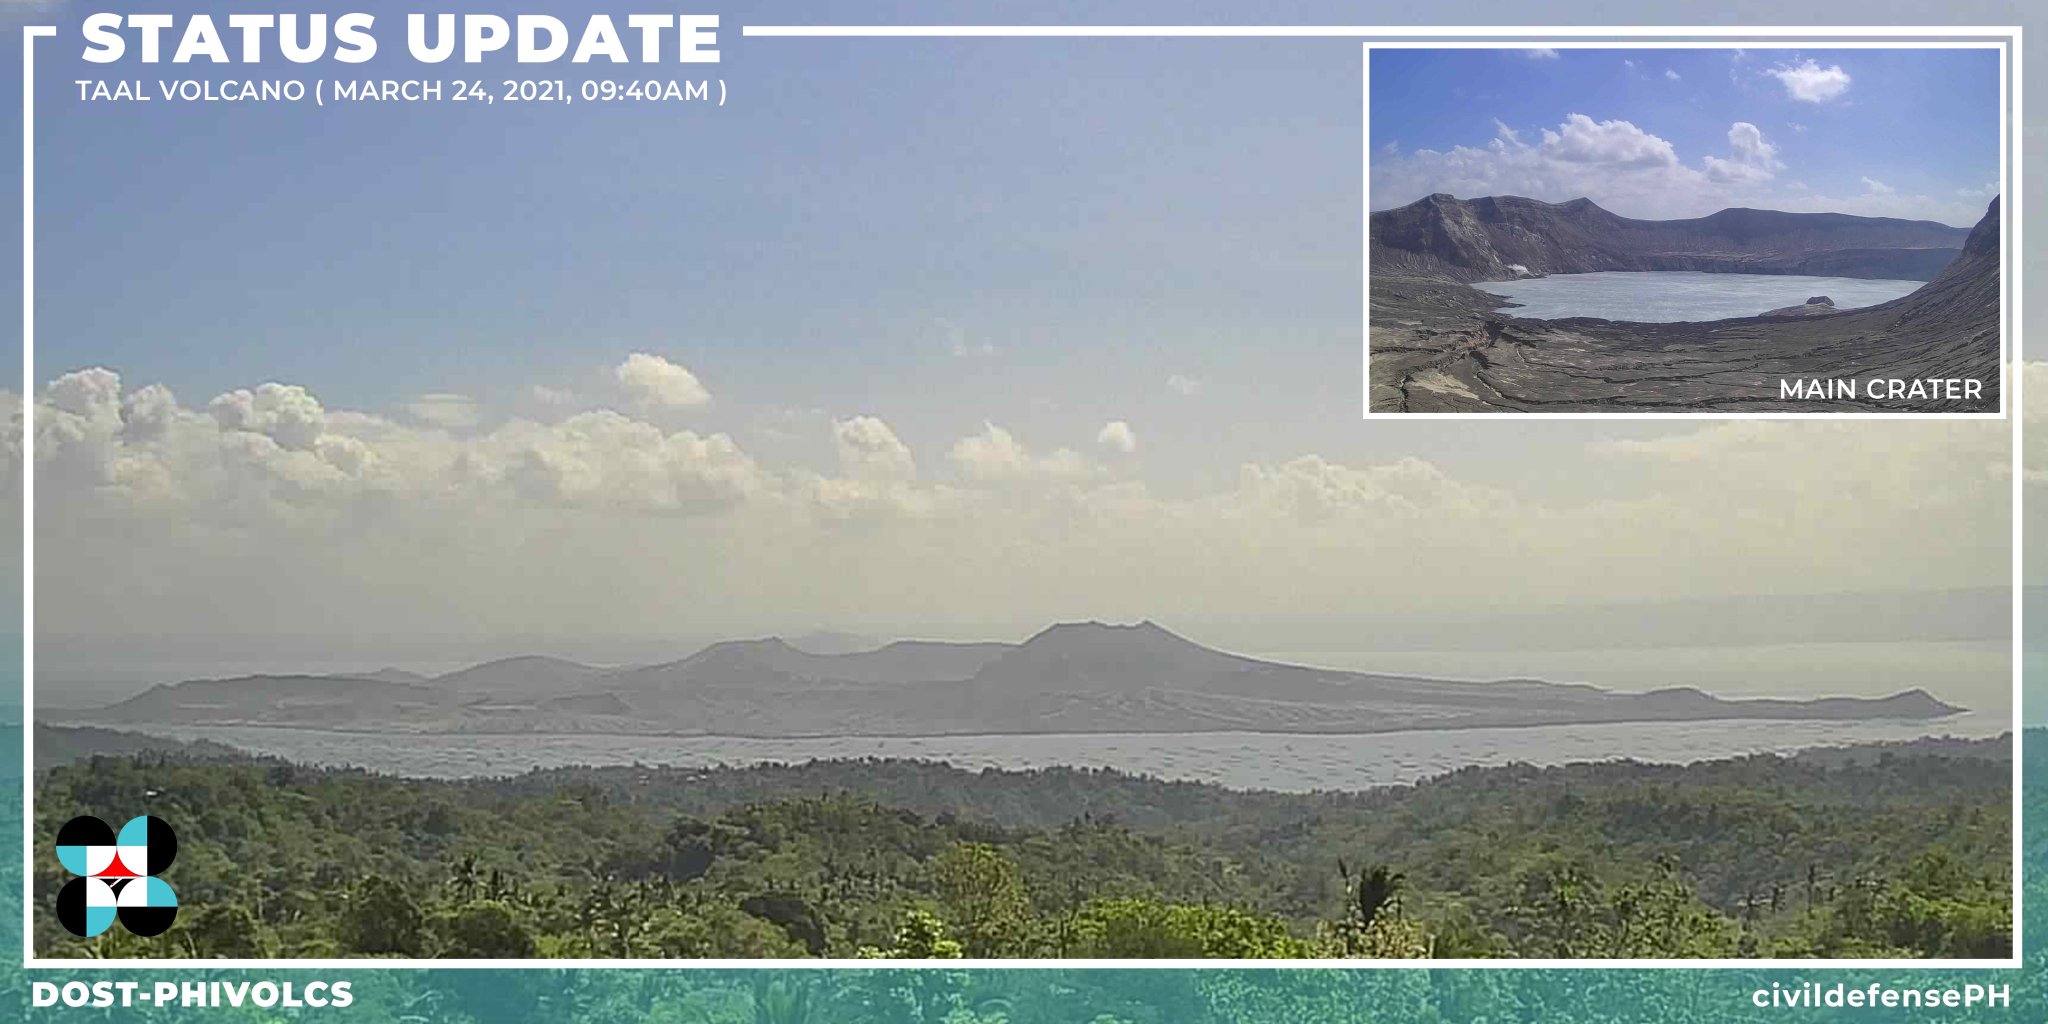 菲律宾的塔尔火山活动加剧，喷发的可能性增加